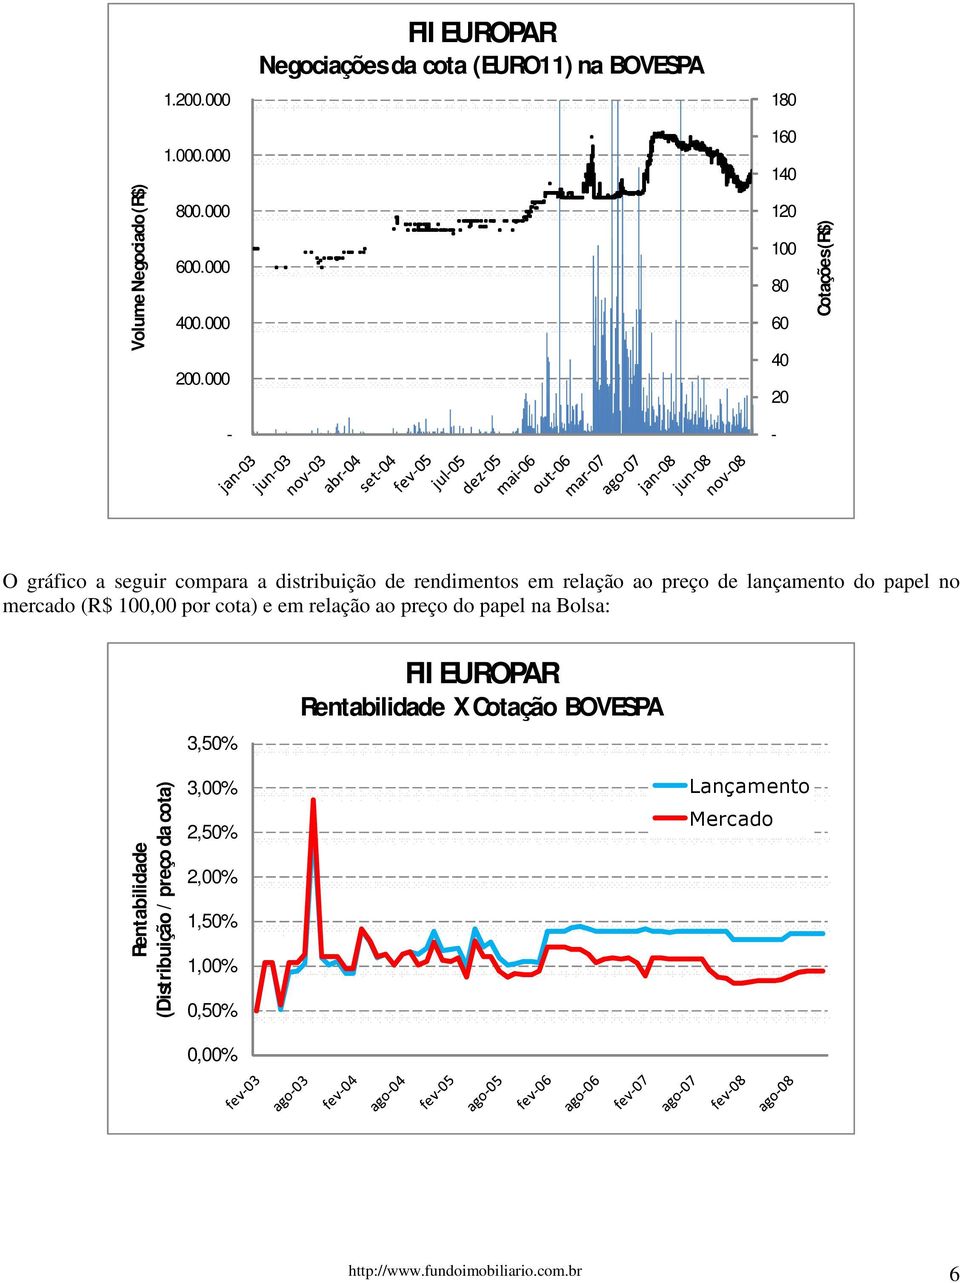 papel no mercado (R$ 100,00 por cota) e em relação ao preço do papel na Bolsa: 3,50% FII EUROPAR Rentabilidade X Cotação BOVESPA